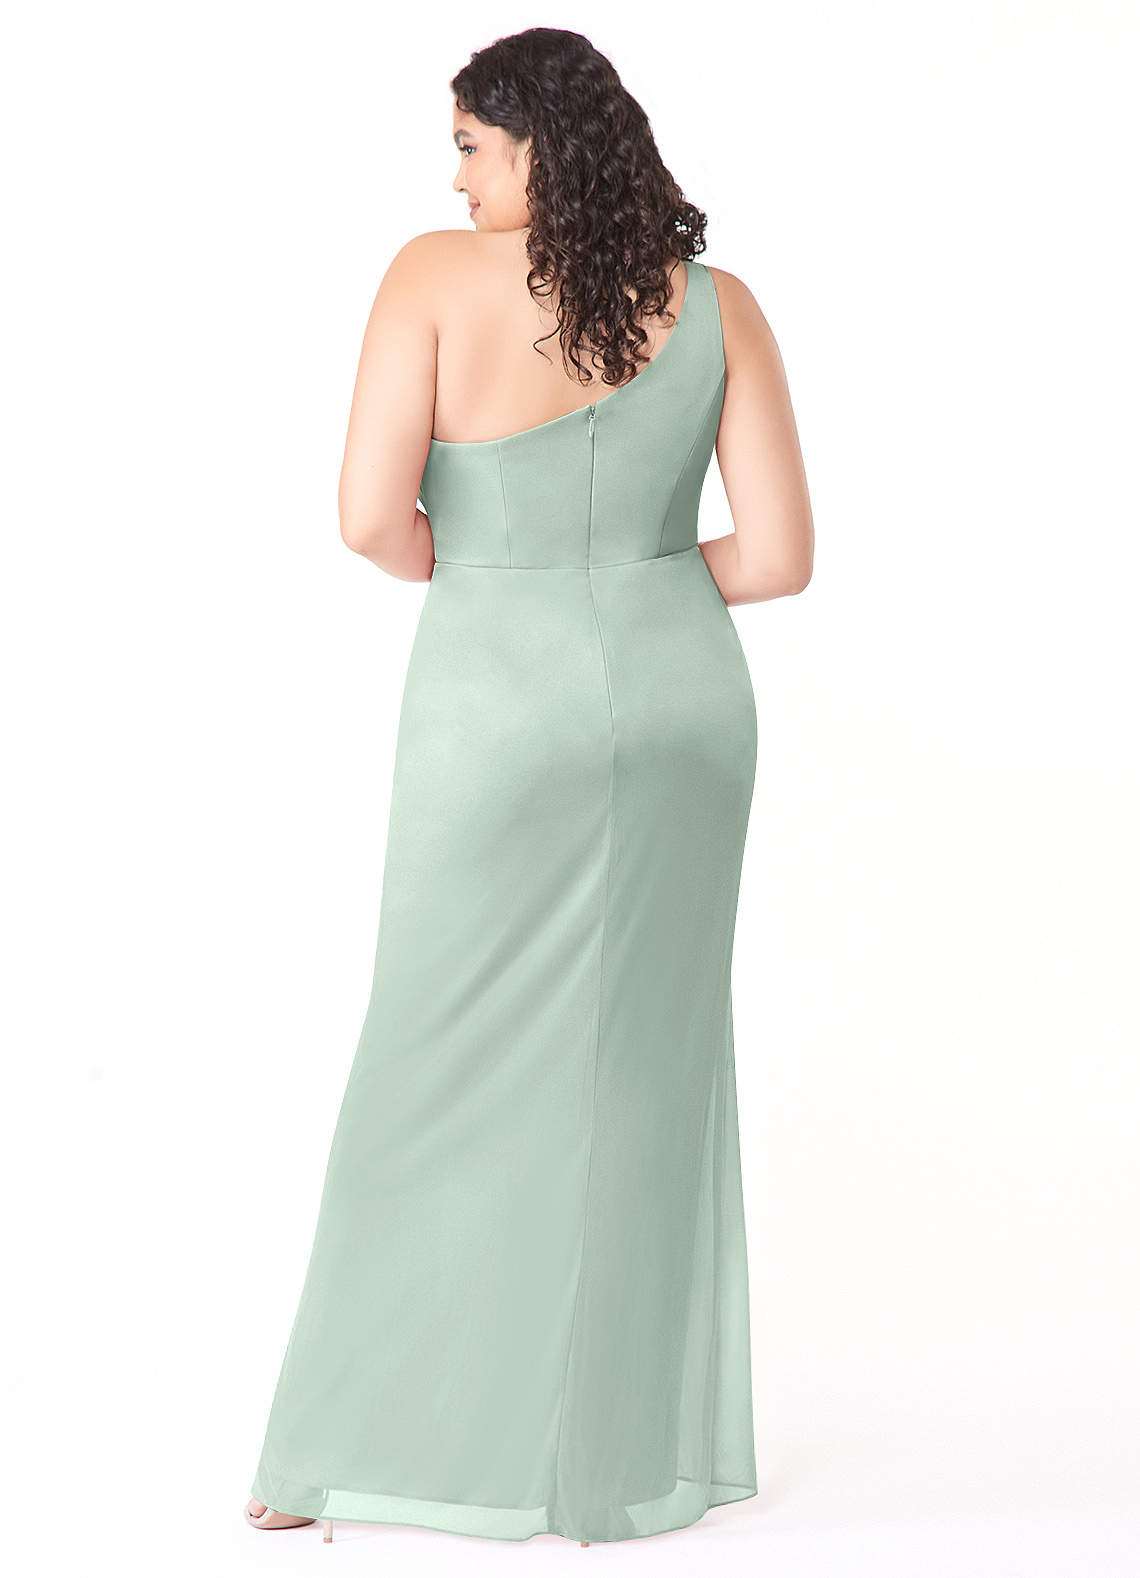 Azazie Cassia Bridesmaid Dresses Sheath One Shoulder Mesh Floor-Length Dress image1